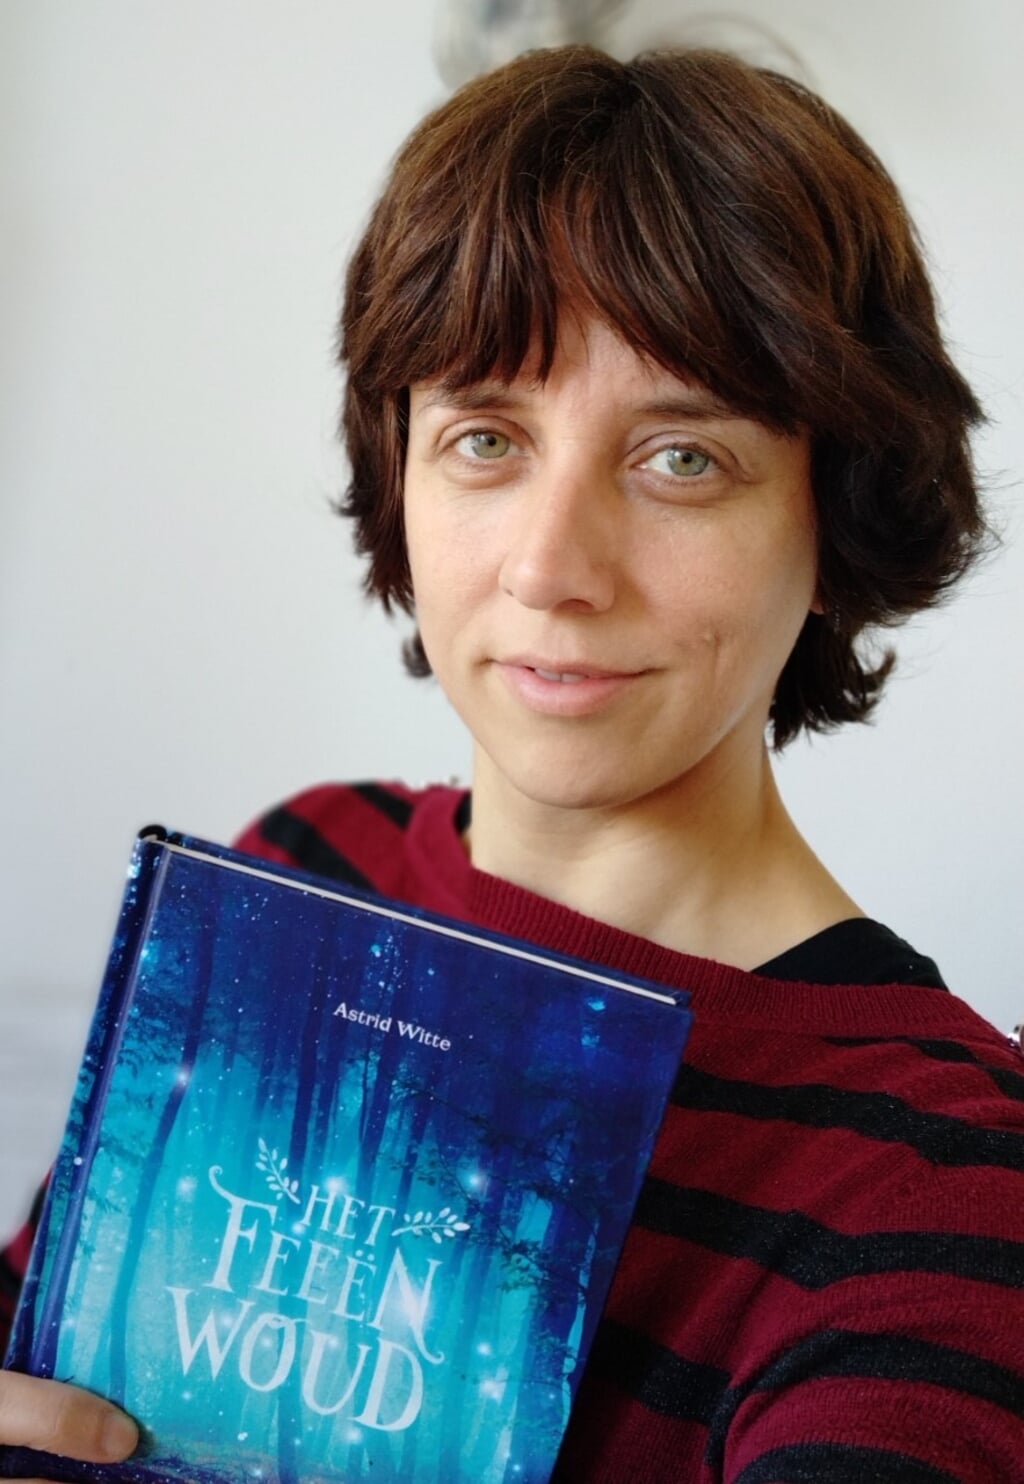 Schrijfster Astrid Witte met haar boek "Feënwoud".